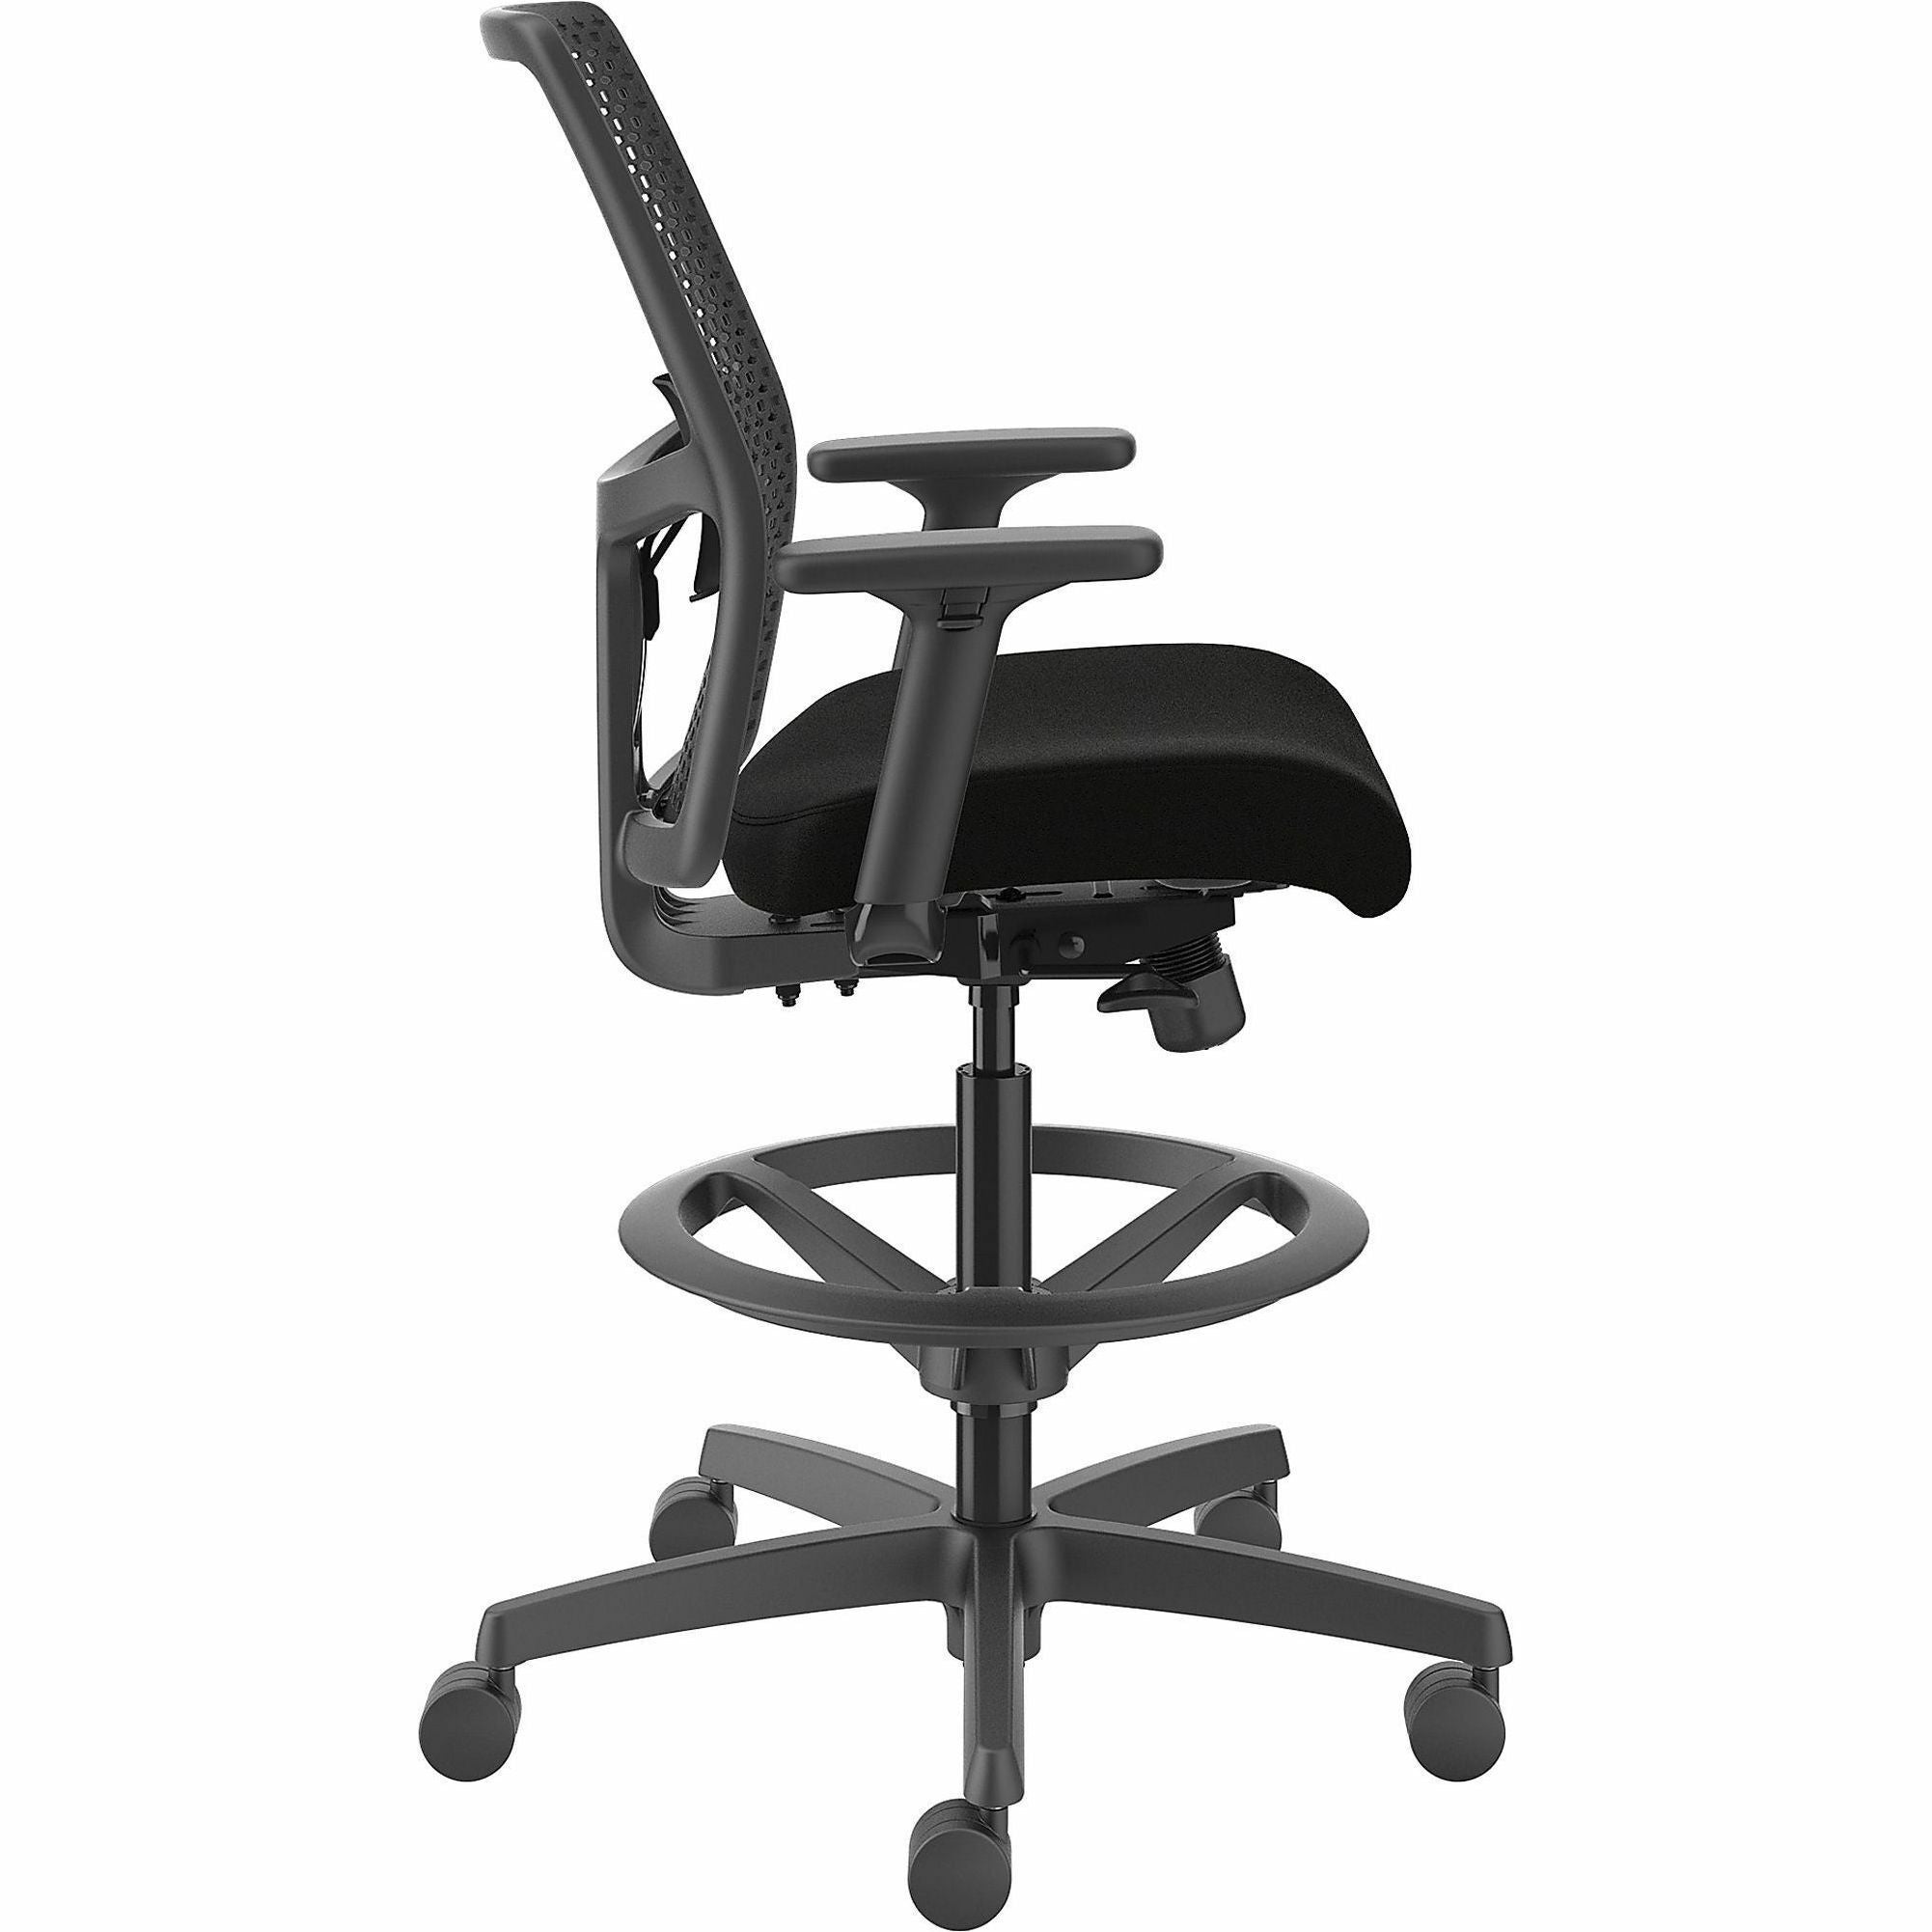 hon-ignition-reactiv-low-back-task-stool-black-foam-seat-black-frame-low-back-5-star-base-armrest-1-each_honi1ra1a0u10at - 5